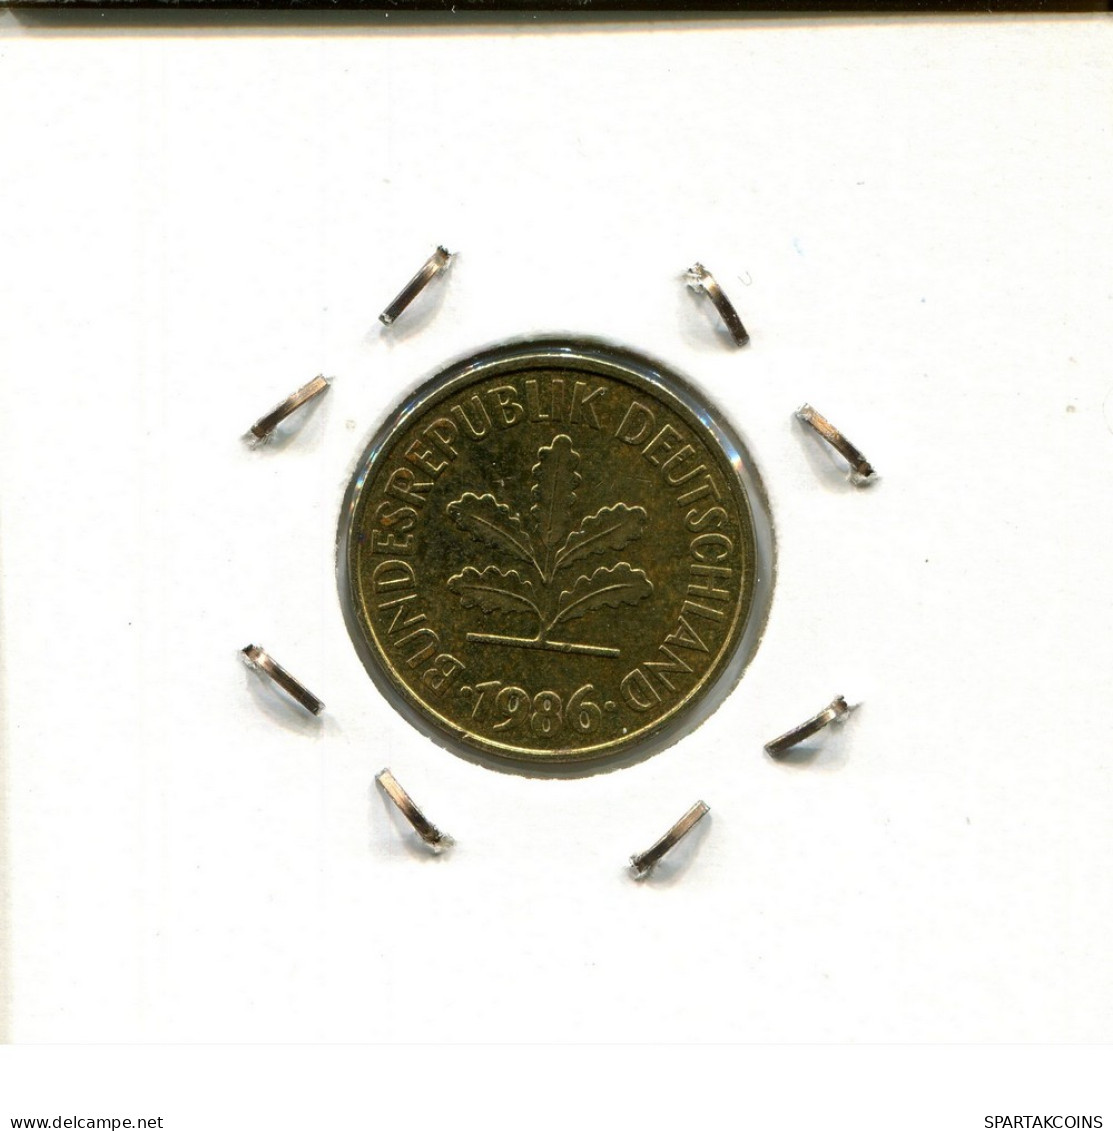 5 PFENNIG 1986 F BRD ALEMANIA Moneda GERMANY #DC442.E - 5 Pfennig